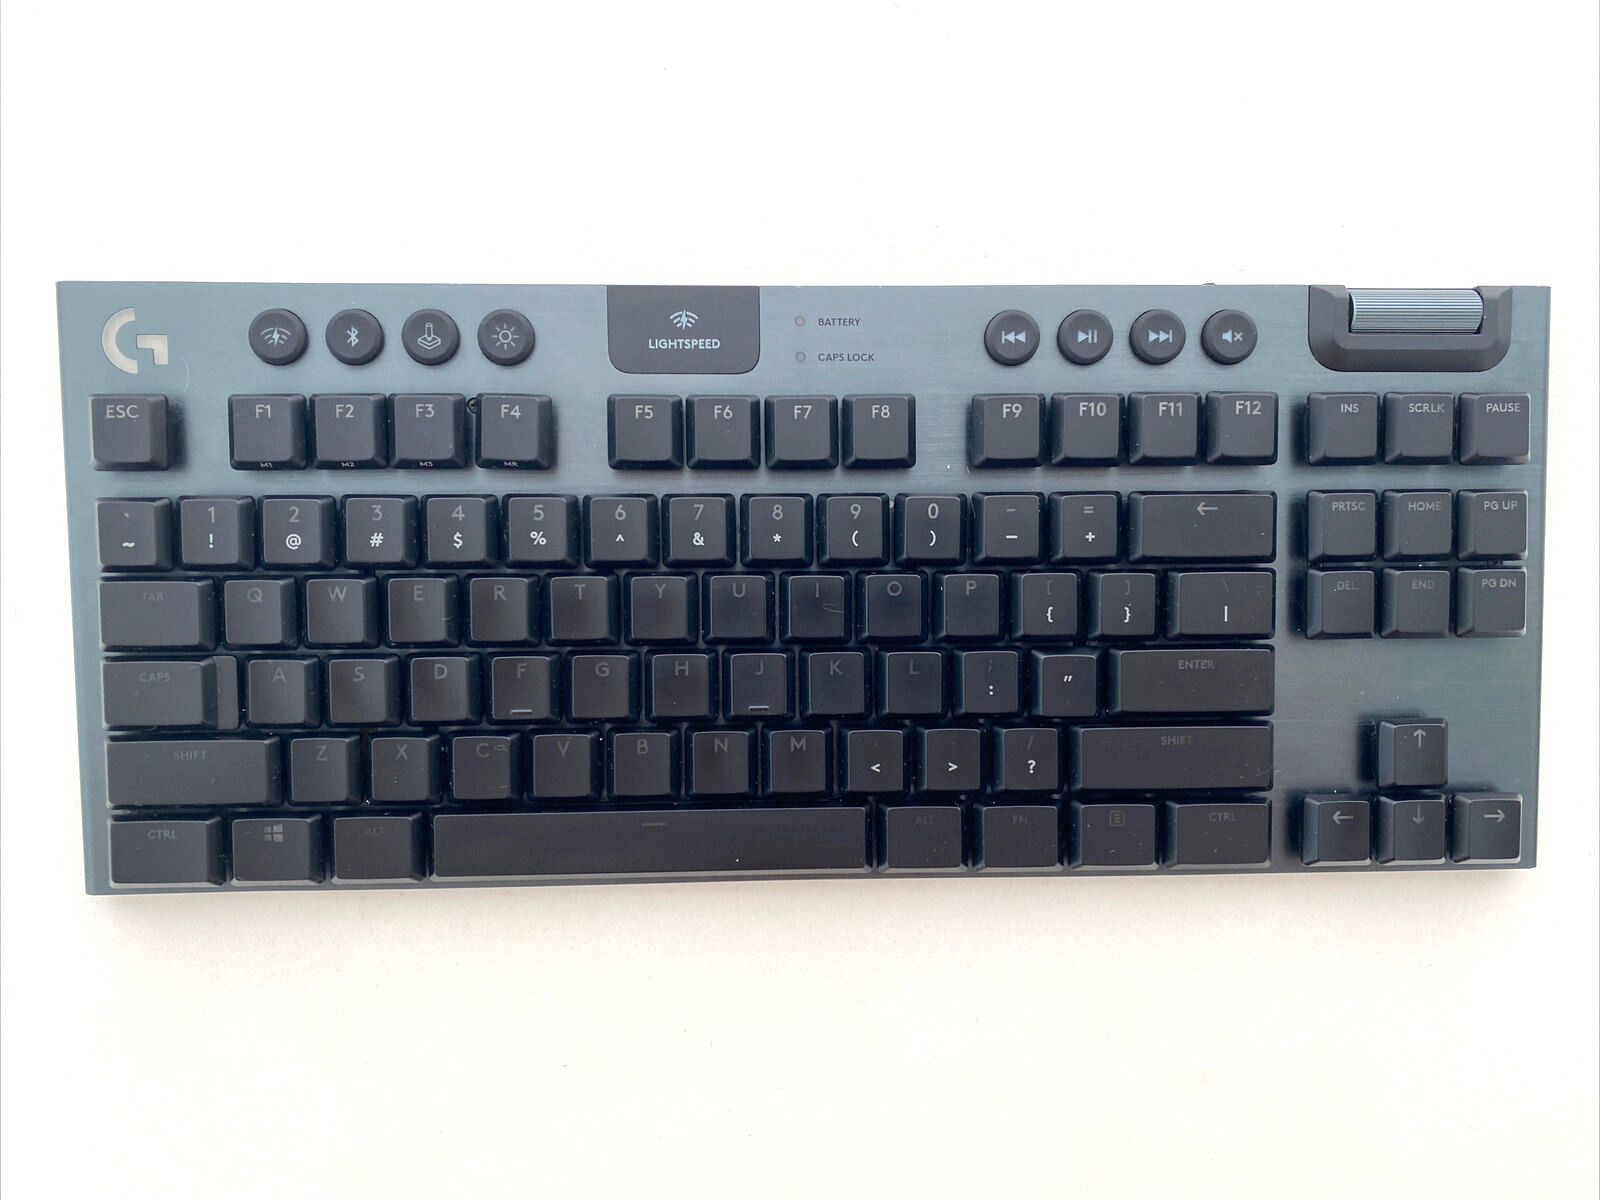 Logitech G915 TKL Lightspeed Mechanical Gaming Keyboard - Black, Tactile